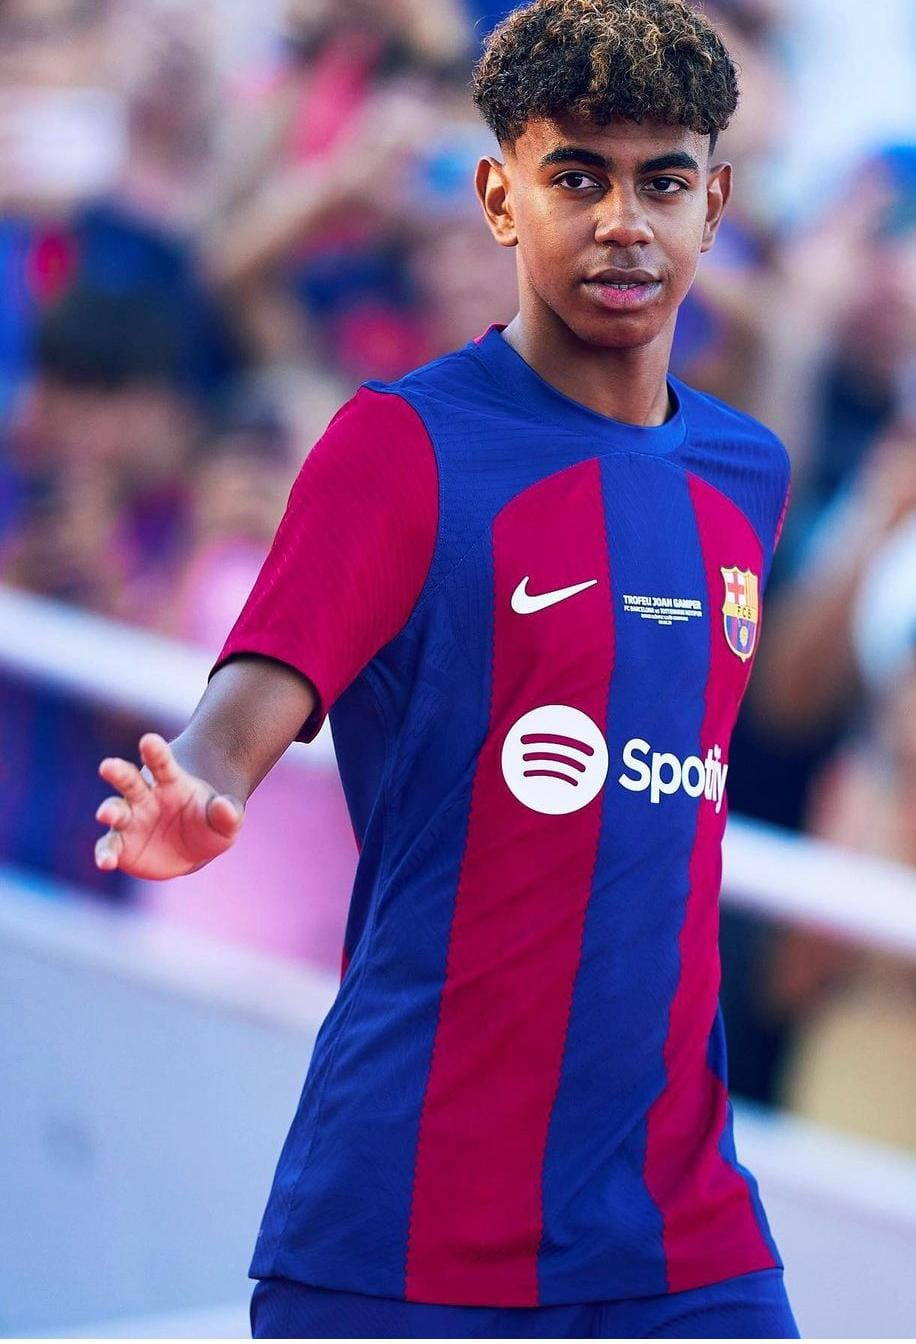 Jogador de 16 anos do Barcelona assina contrato com cláusula de R$ 5,3  bilhões